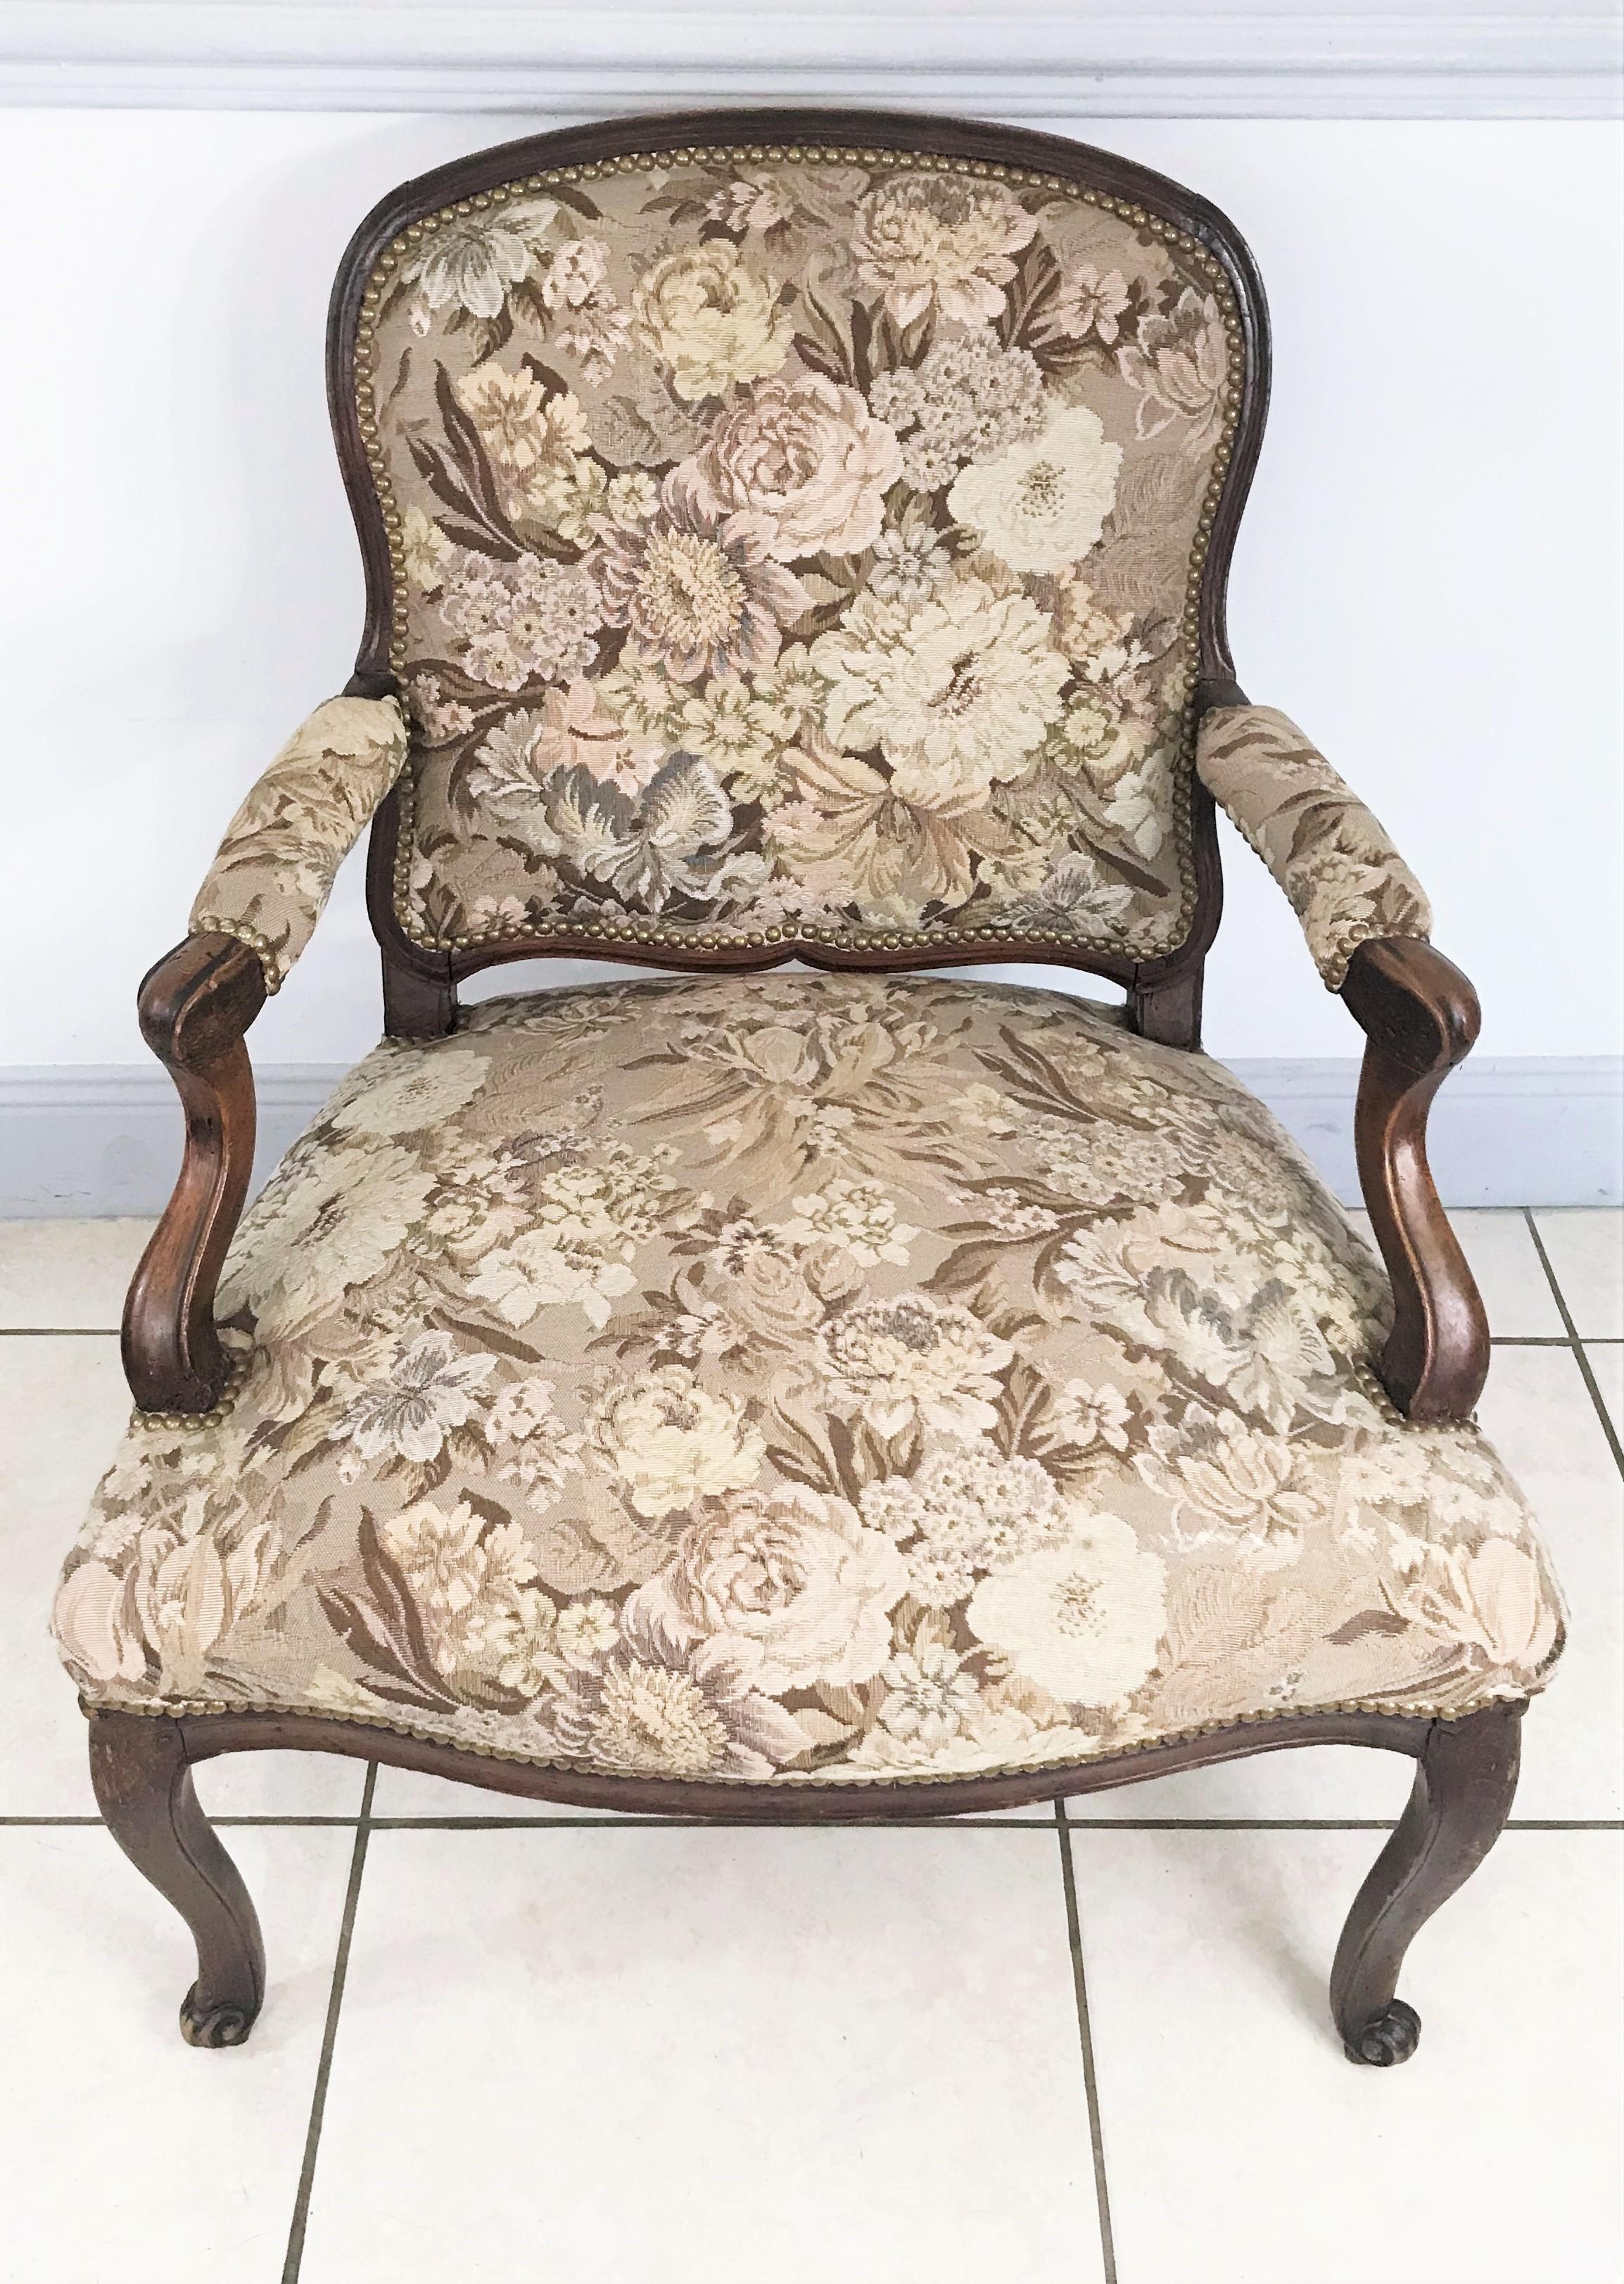 Beau fauteuil d'époque Louis XV recouvert d'une tapisserie à motifs floraux. Les fauteuils ont un mouvement sobre et élégant de ses accotoires ainsi que de ses pieds arqués.
France
vers 1750.